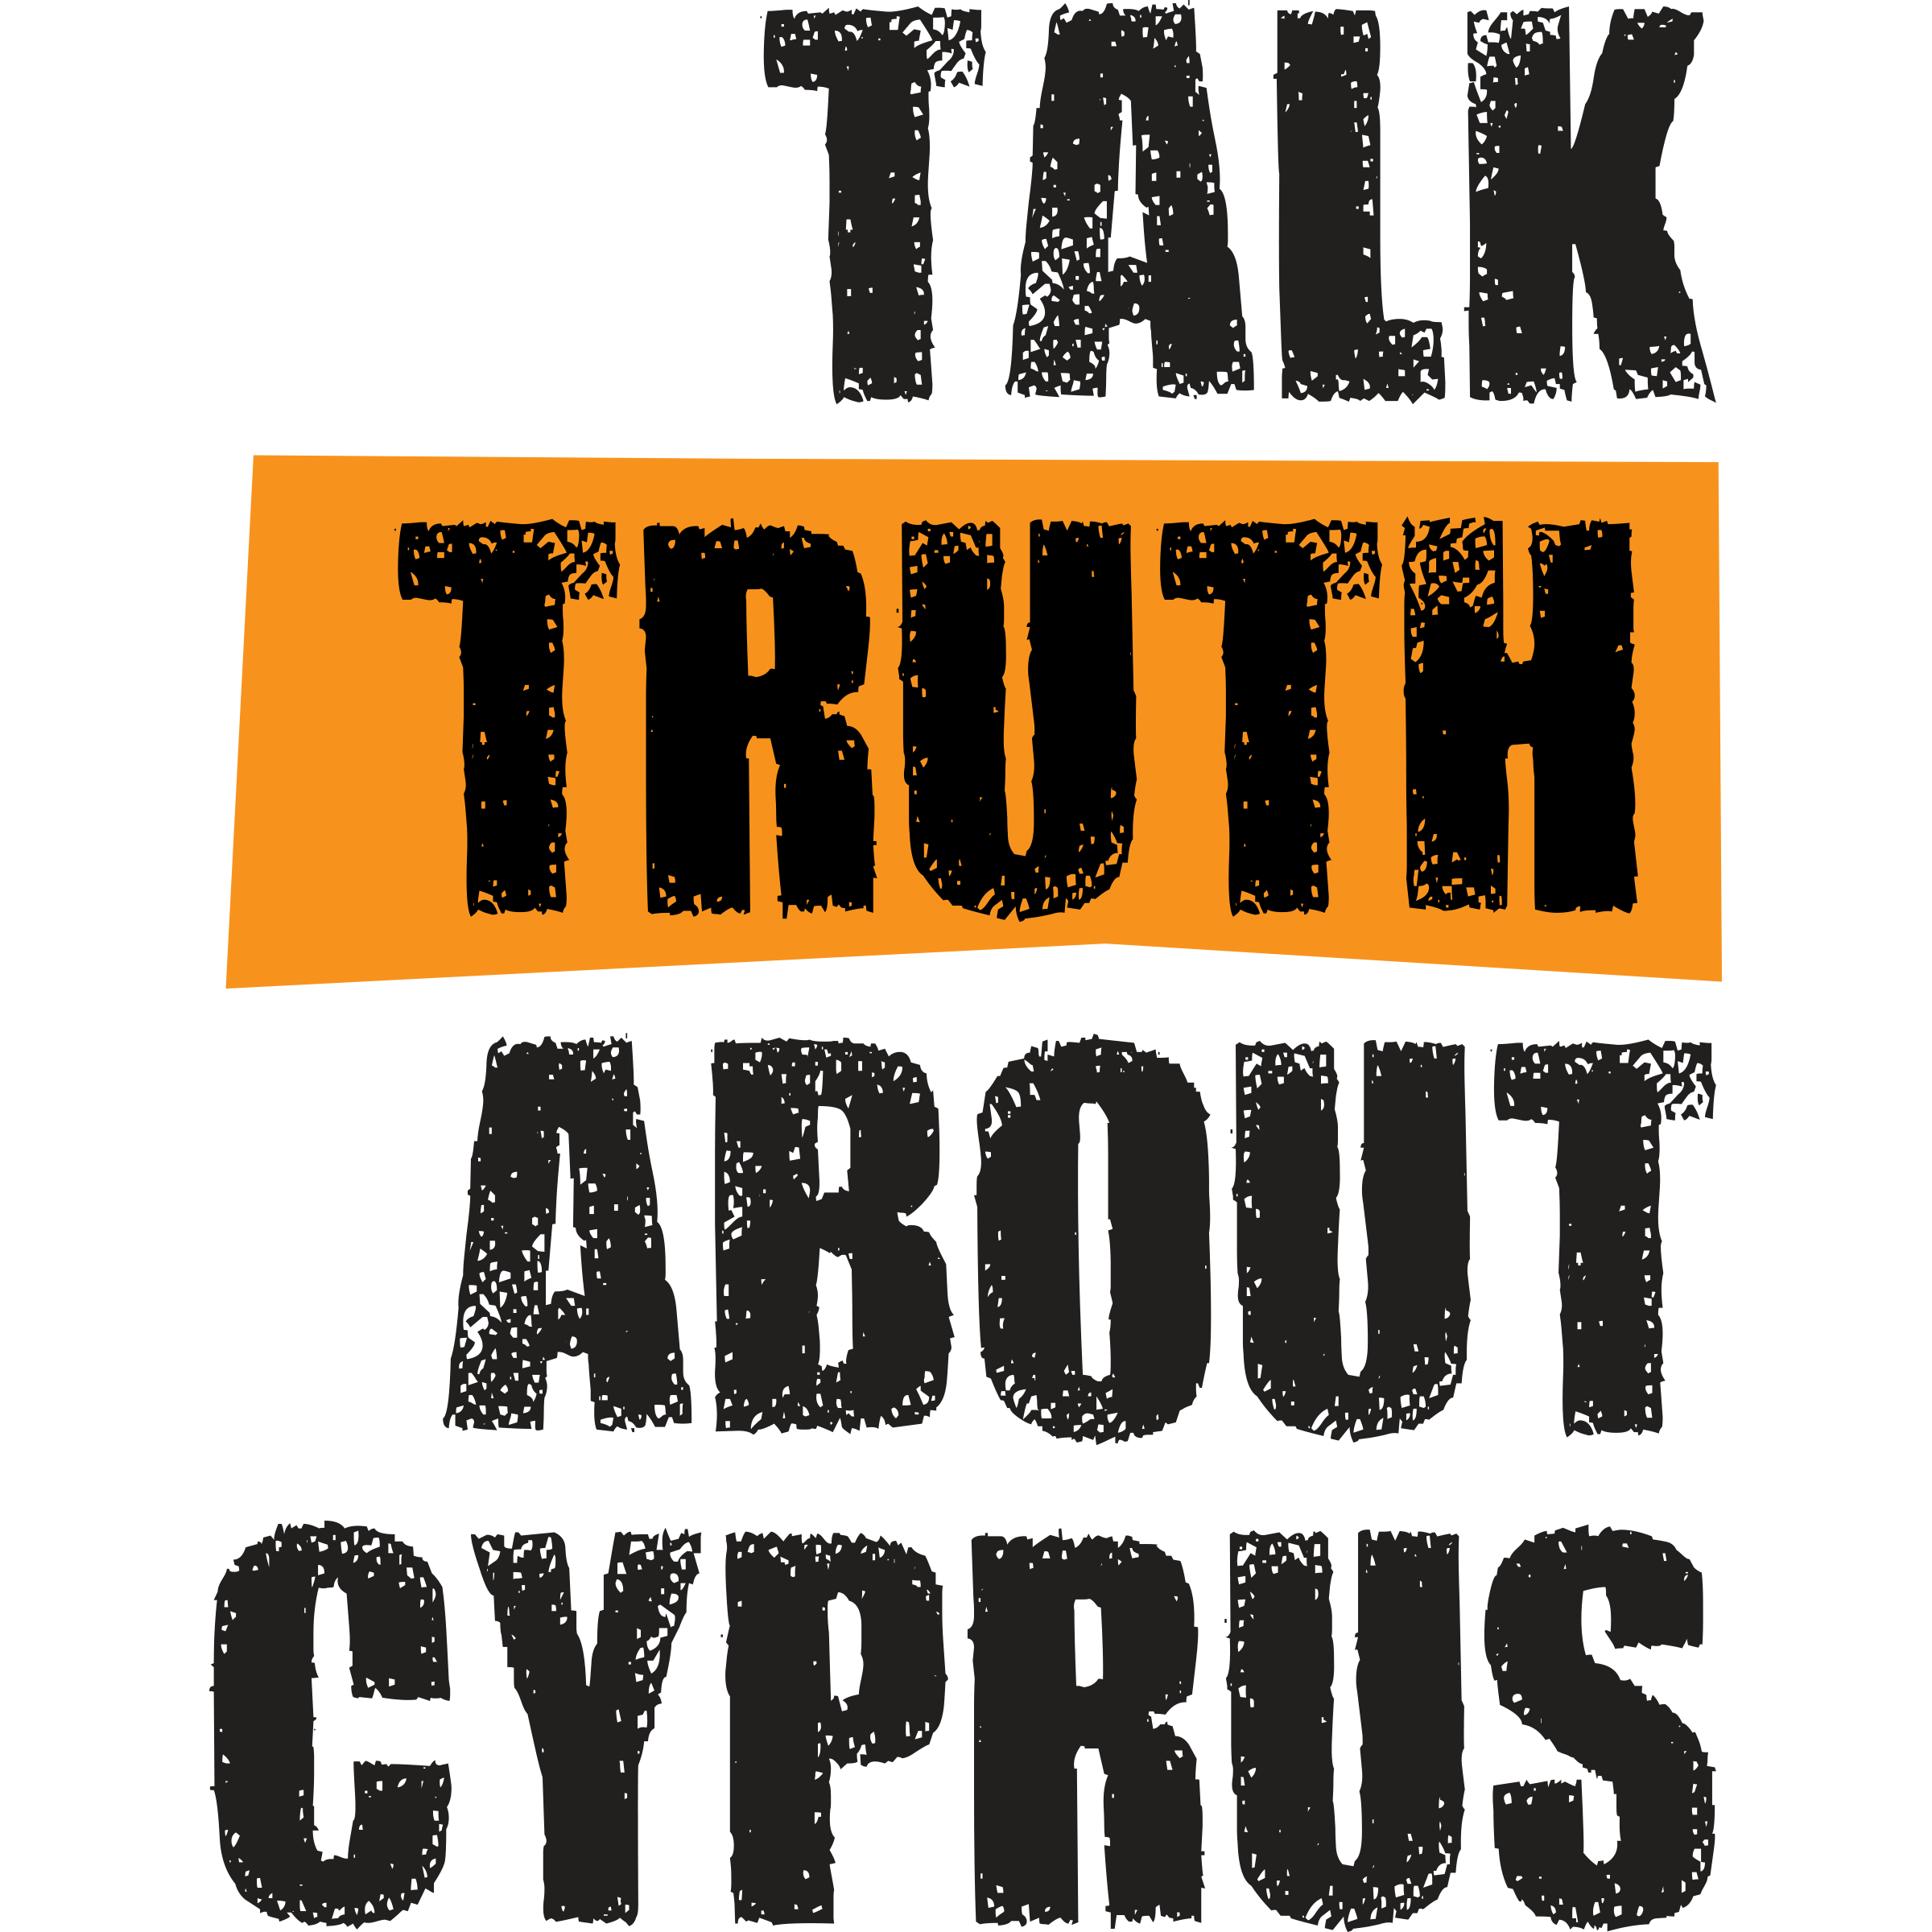 TalkTruthAboutCyprus